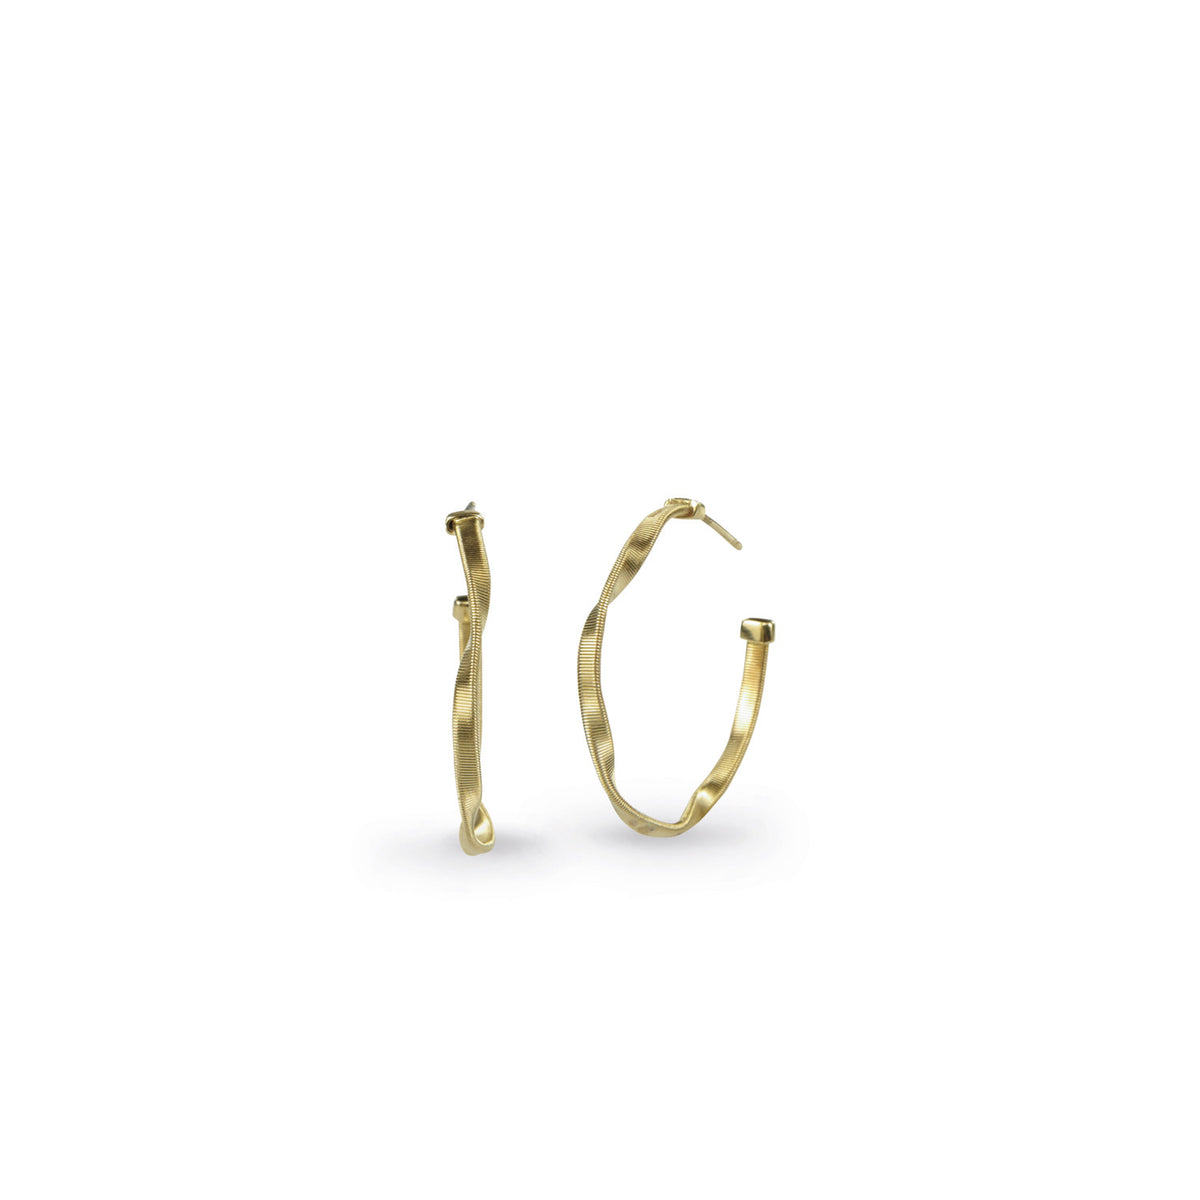 Marrakech Hoop Earrings in 18k Yellow Gold Small - Orsini Jewellers NZ